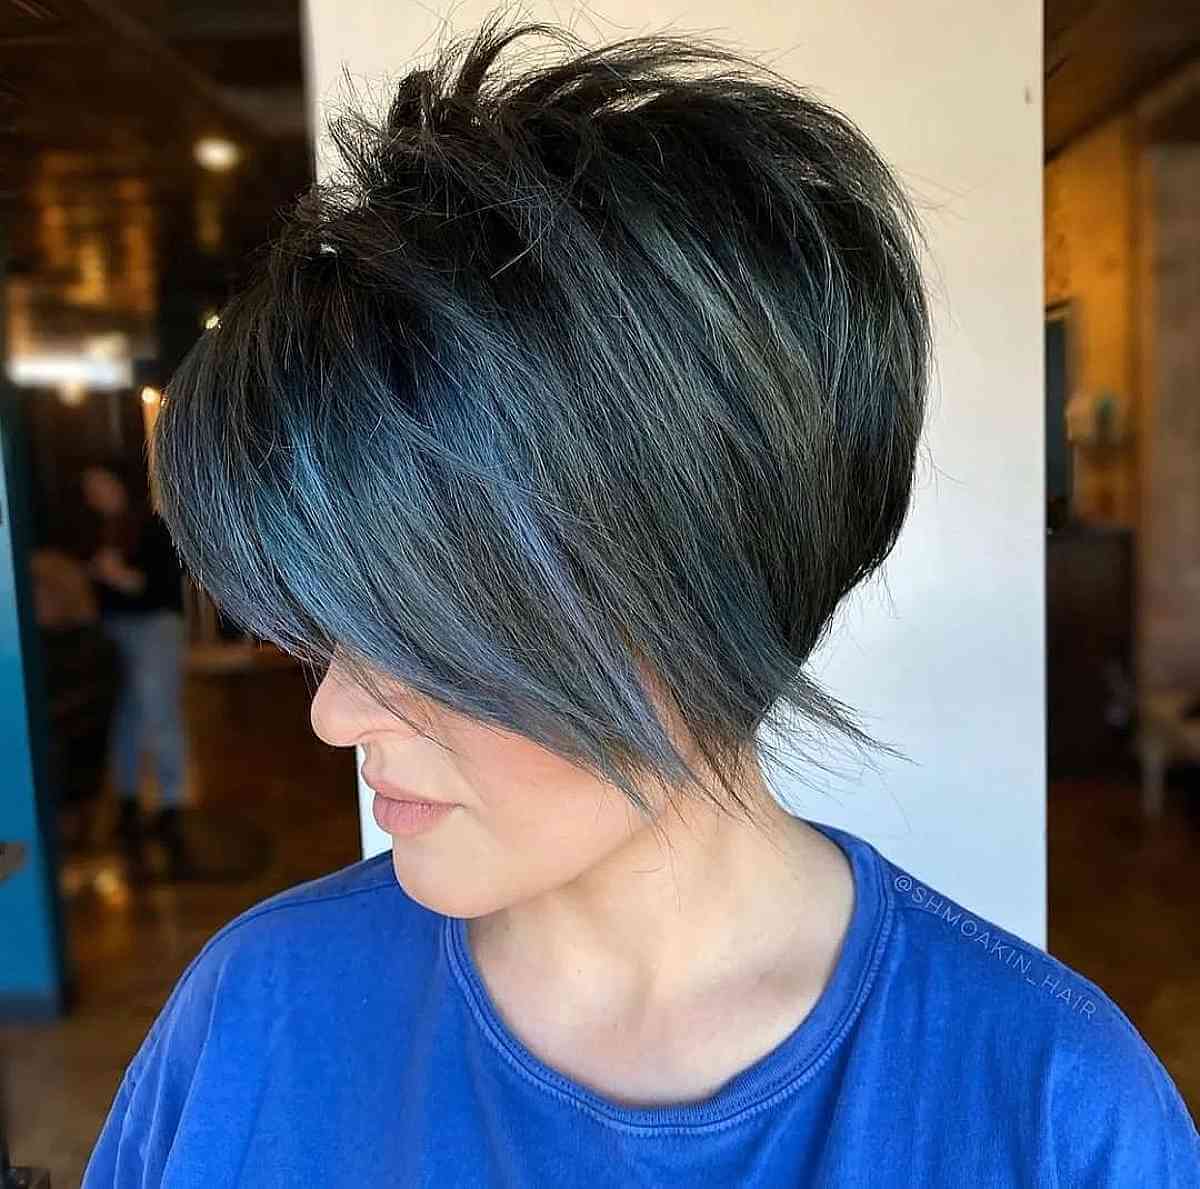 Девушка со стрижкой пикси боб с синими прядями на темных волосах